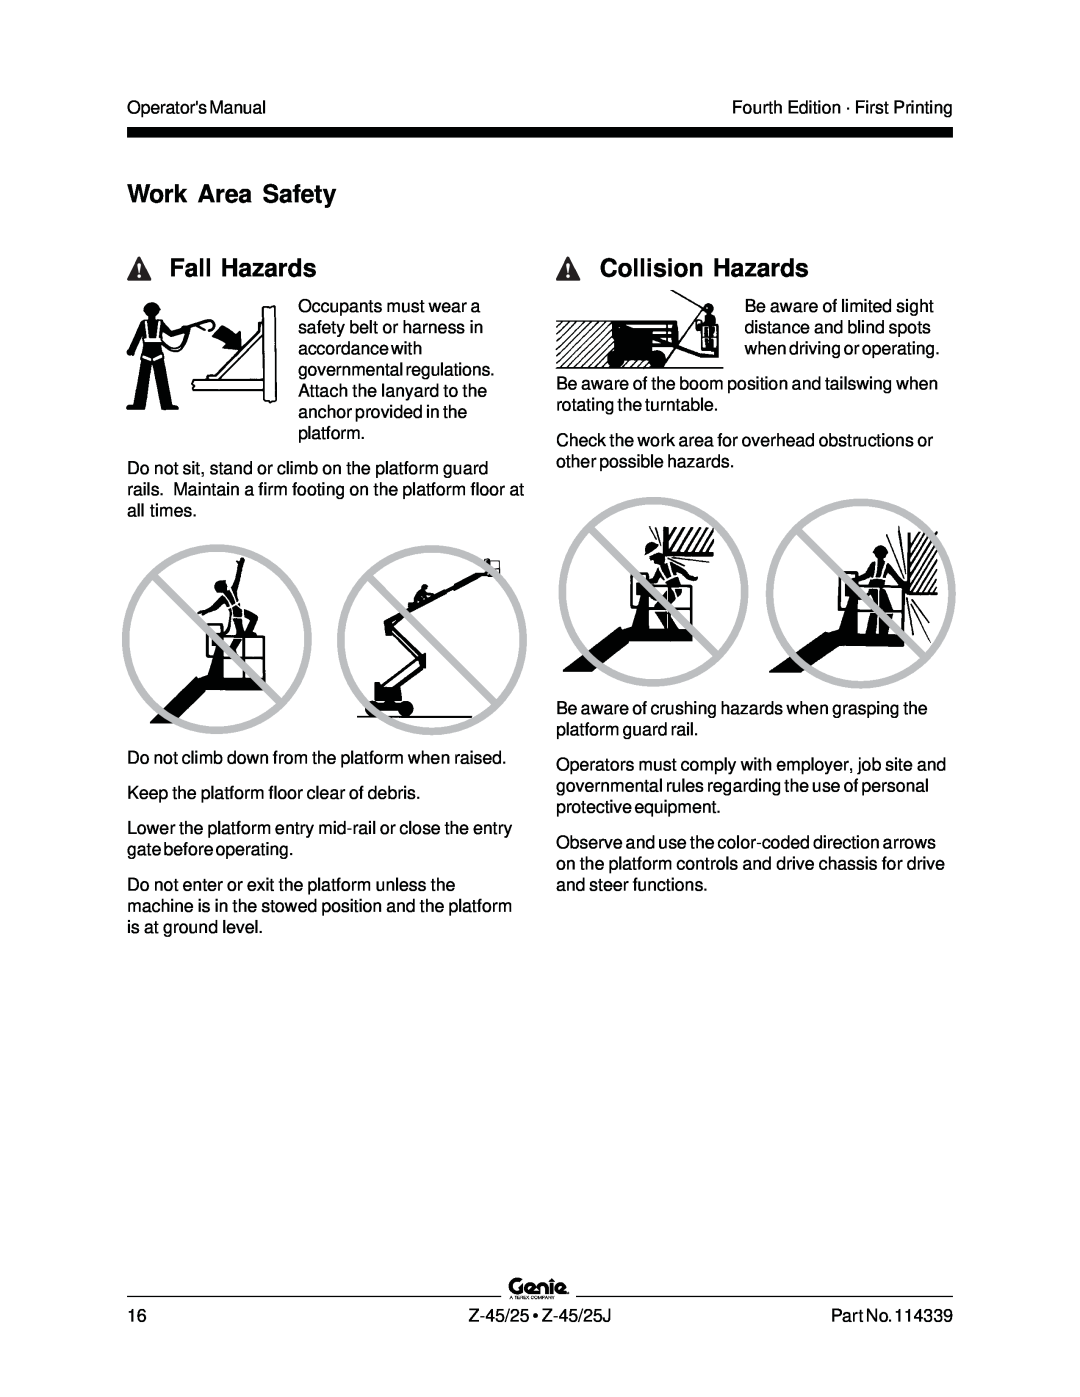 Genie Z-45, Z-25J manual Fall Hazards, Collision Hazards, Work Area Safety 